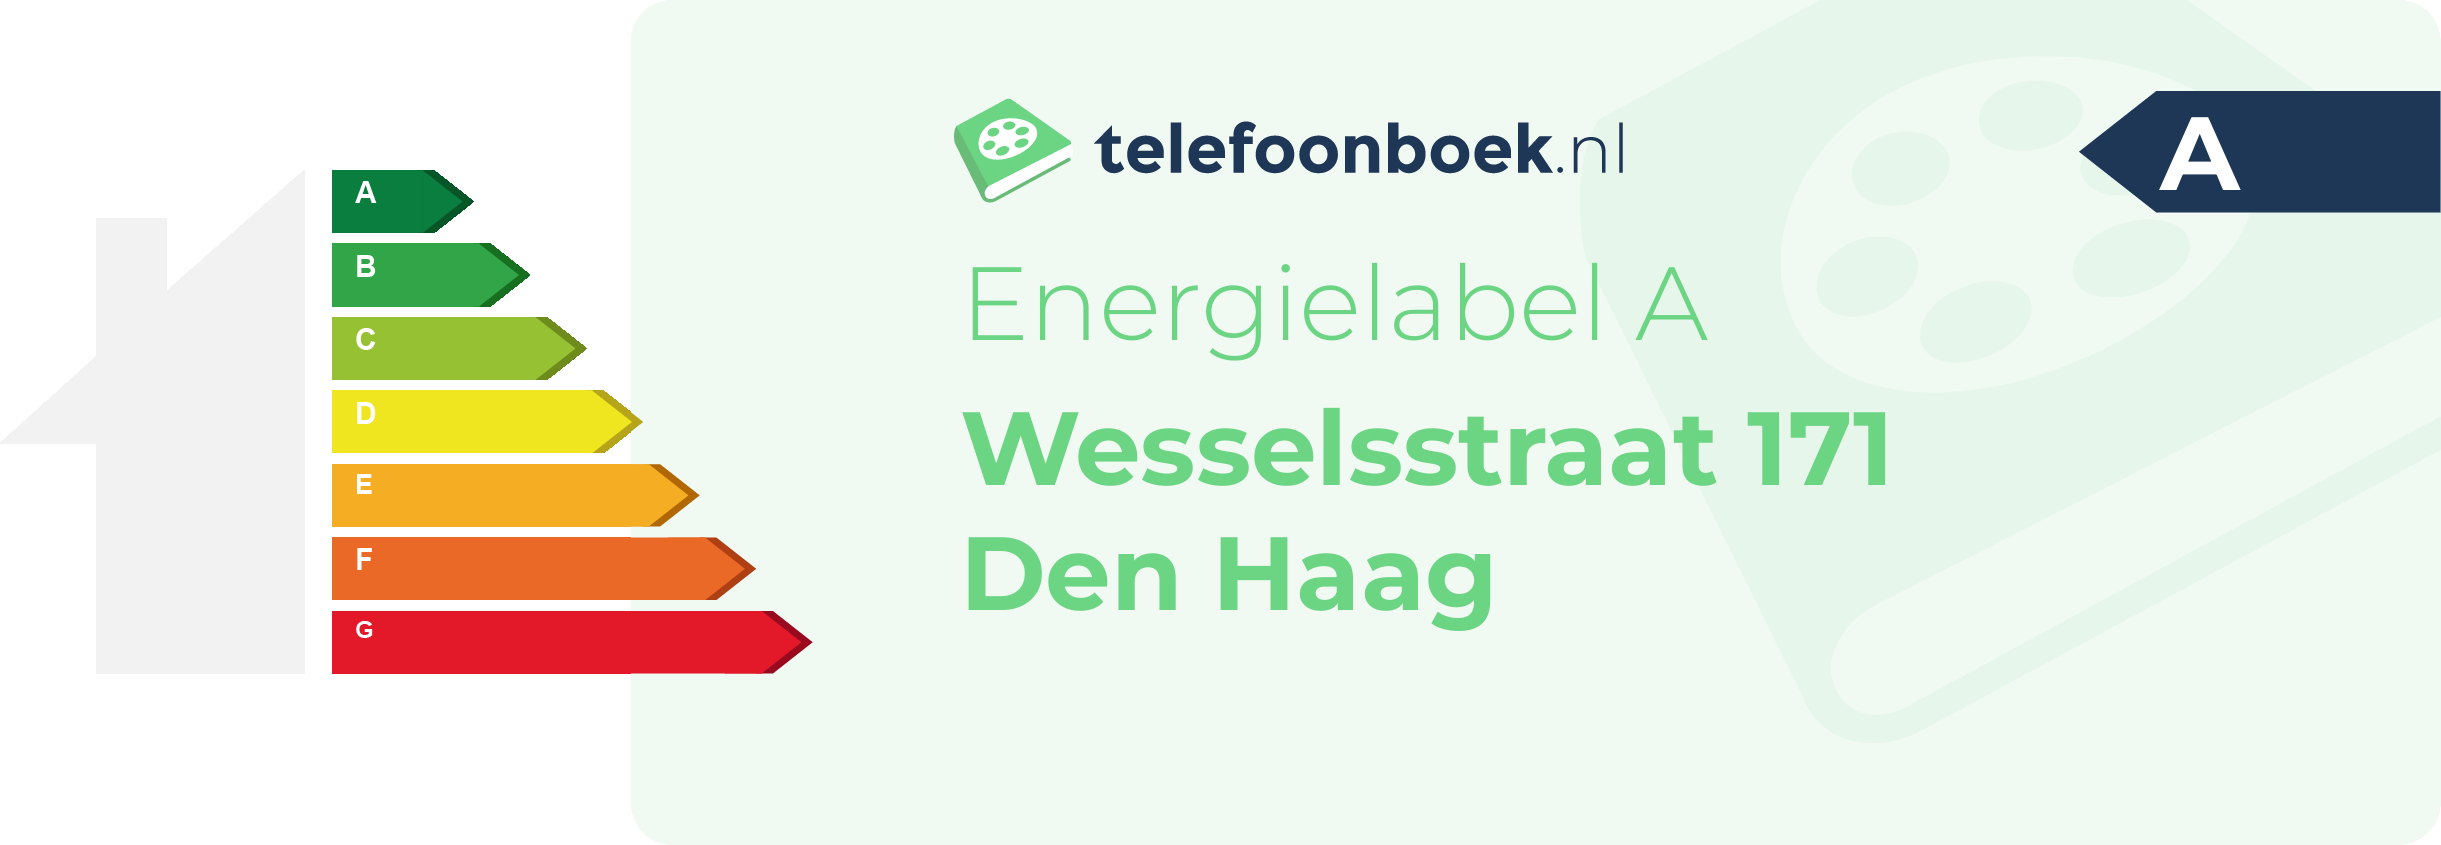 Energielabel Wesselsstraat 171 Den Haag